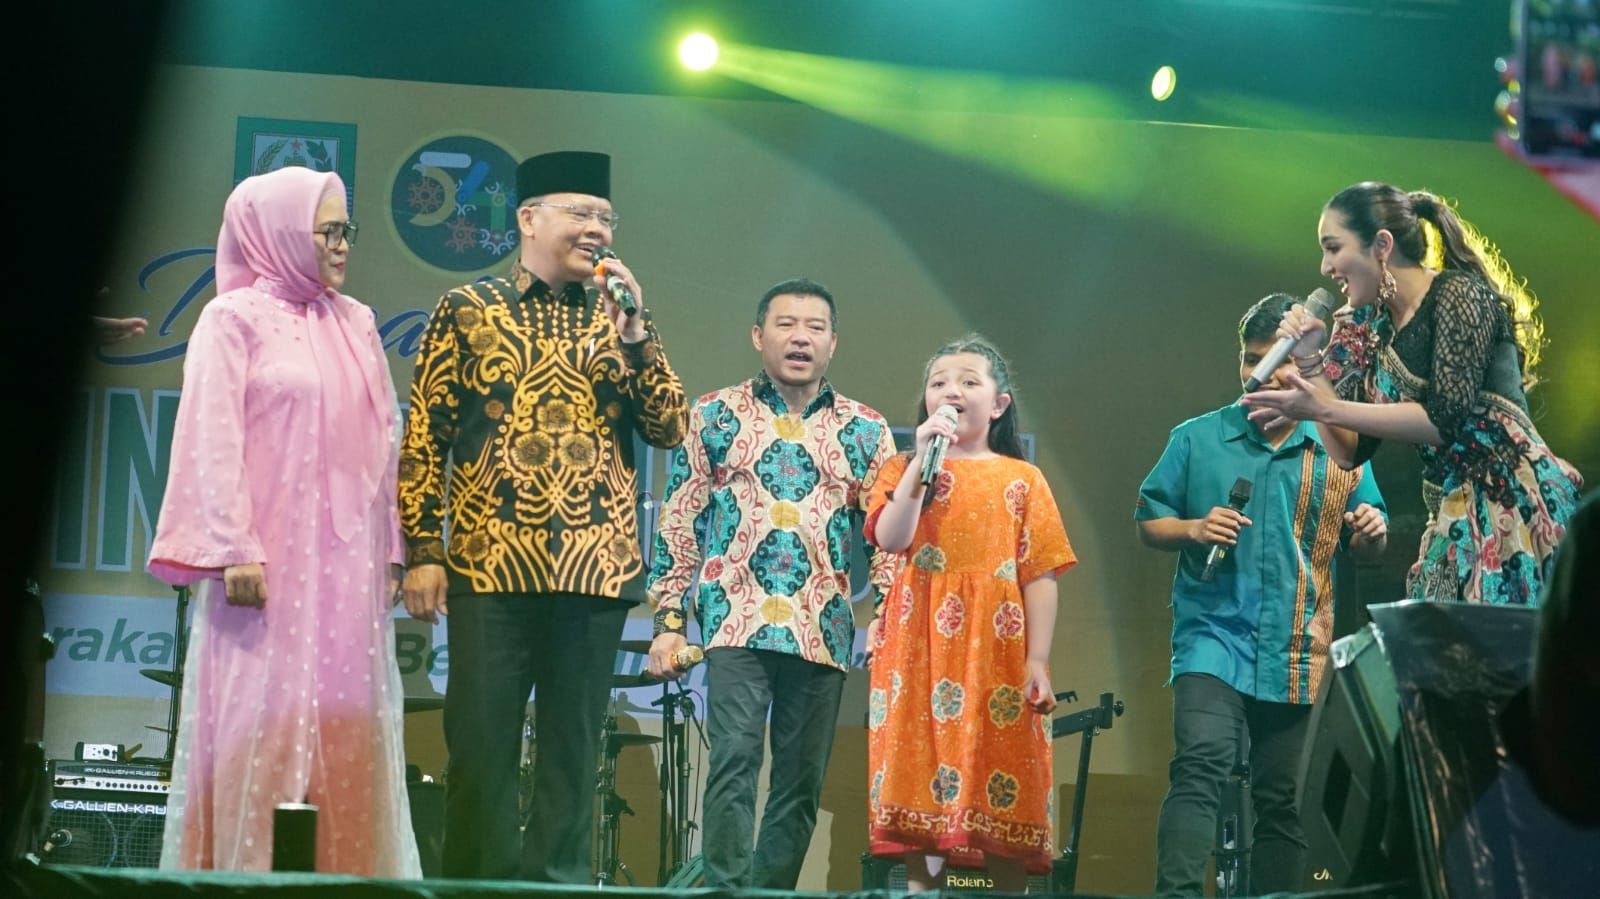 Anang Hermansyah dan Ashanty menghibur masyarakat Bengkulu pada acara malam puncak HUT ke-54 Bengkulu 